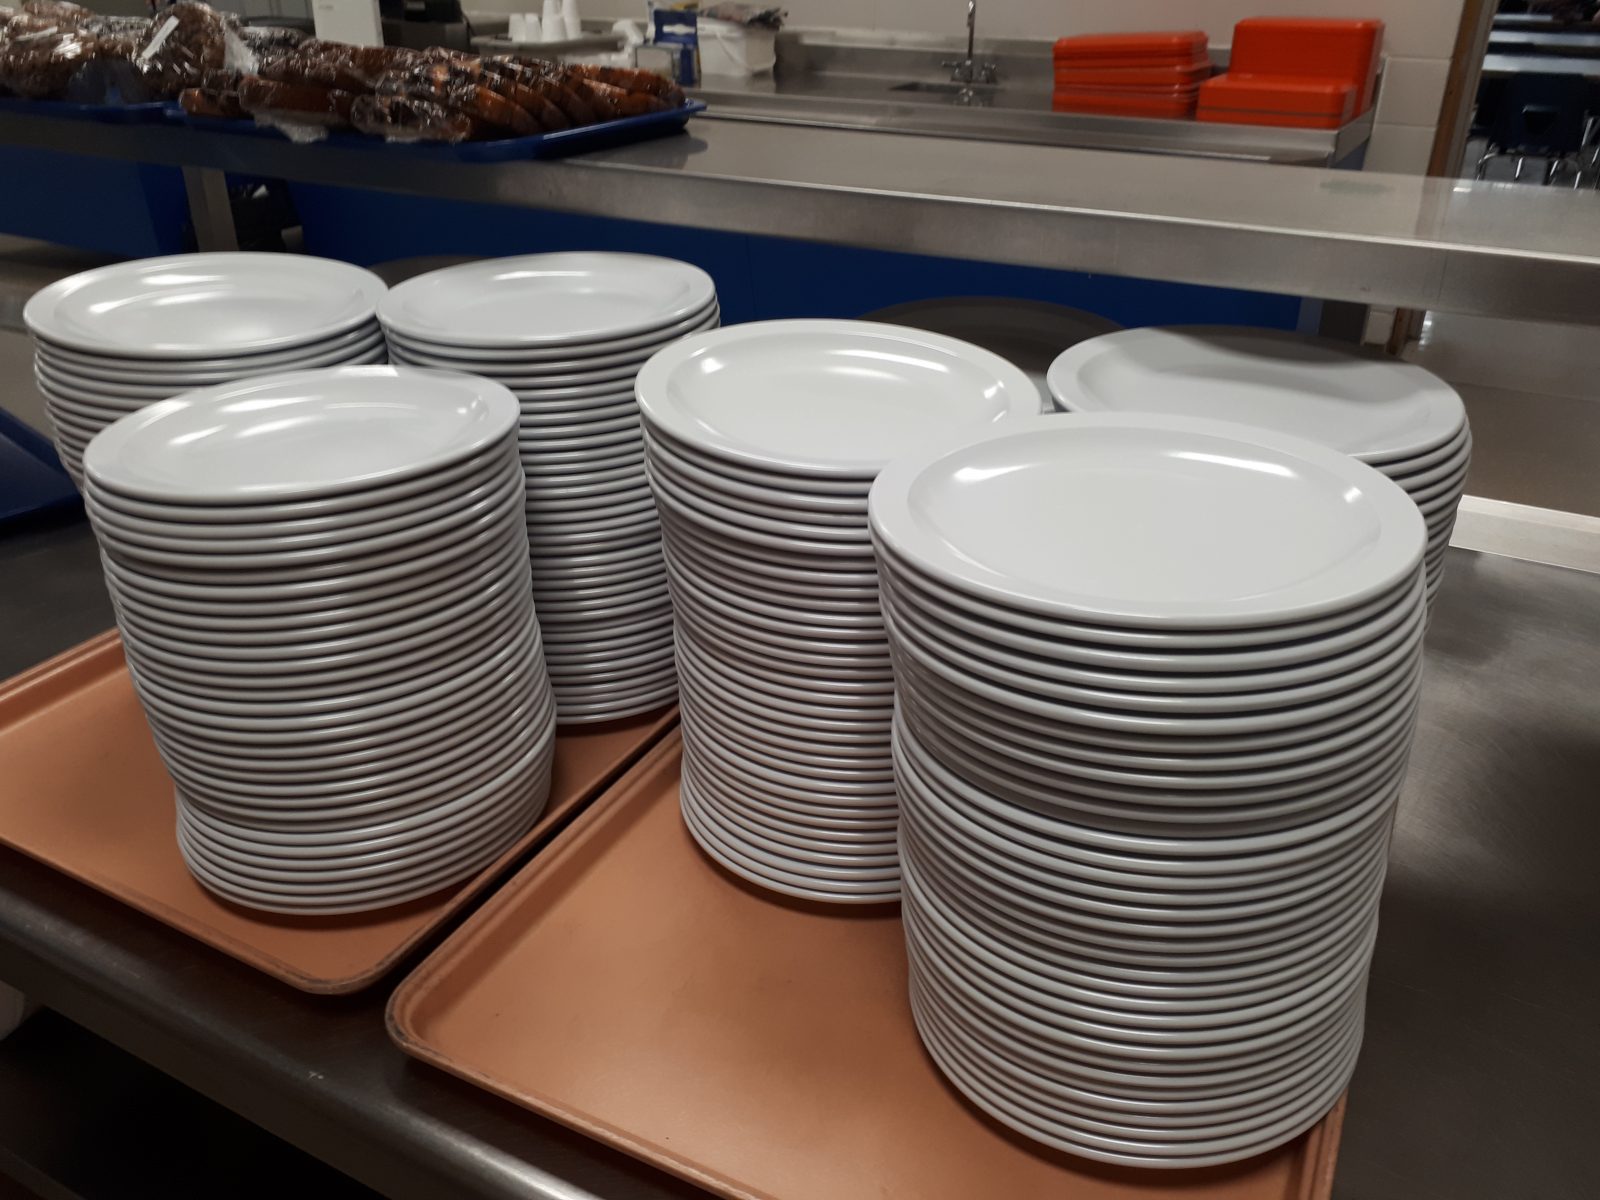 La vaisselle de plastique à usage unique bannie de l’école De Mortagne